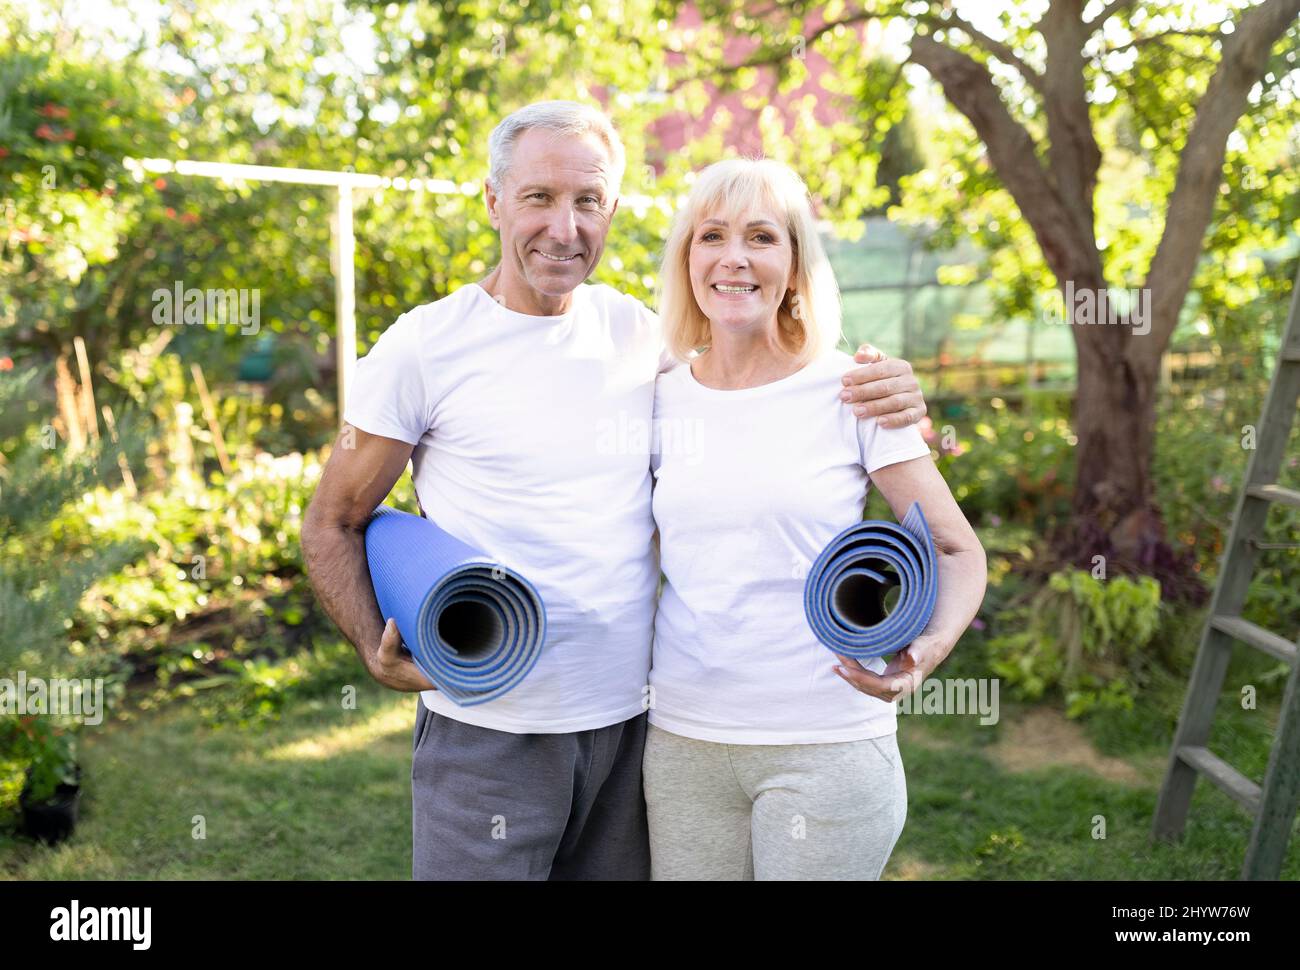 Corpo forte nella vecchiaia. Sposi senior attivi che tengono stuoie yoga e sorridono alla macchina fotografica dopo aver fatto esercizio all'aperto Foto Stock